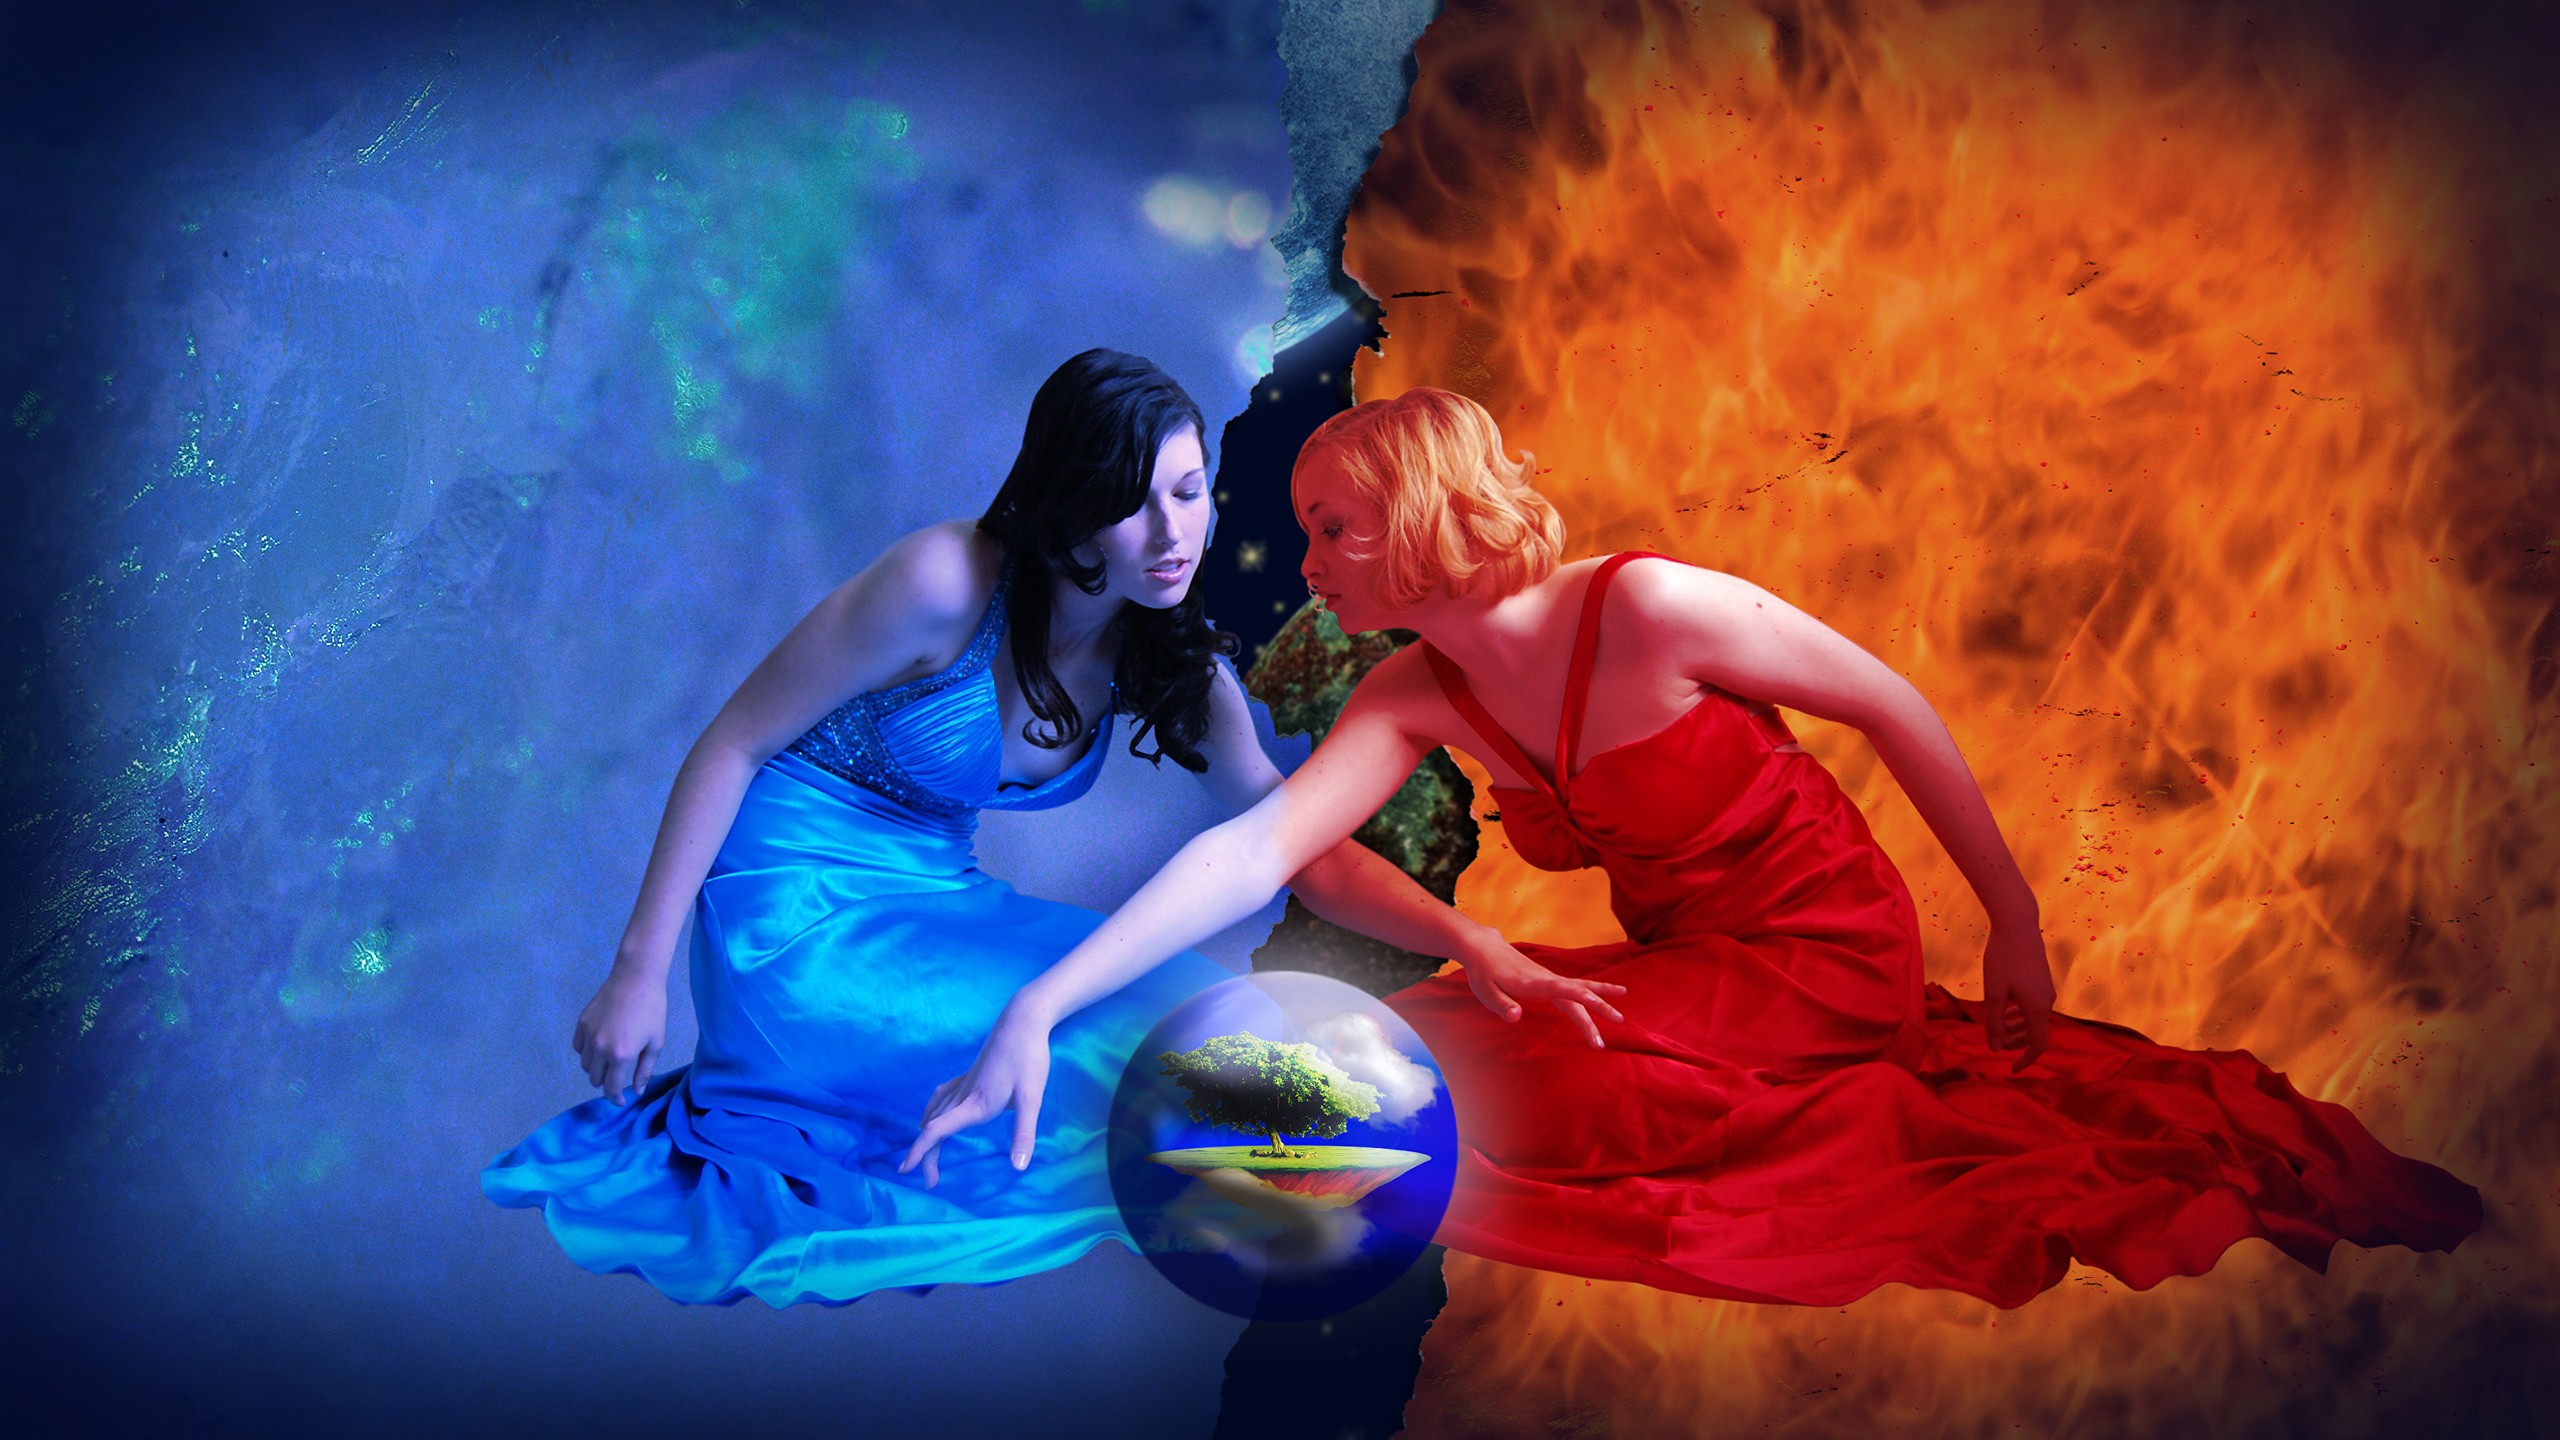 General 2560x1440 women witch water fire elements sphere world digital art